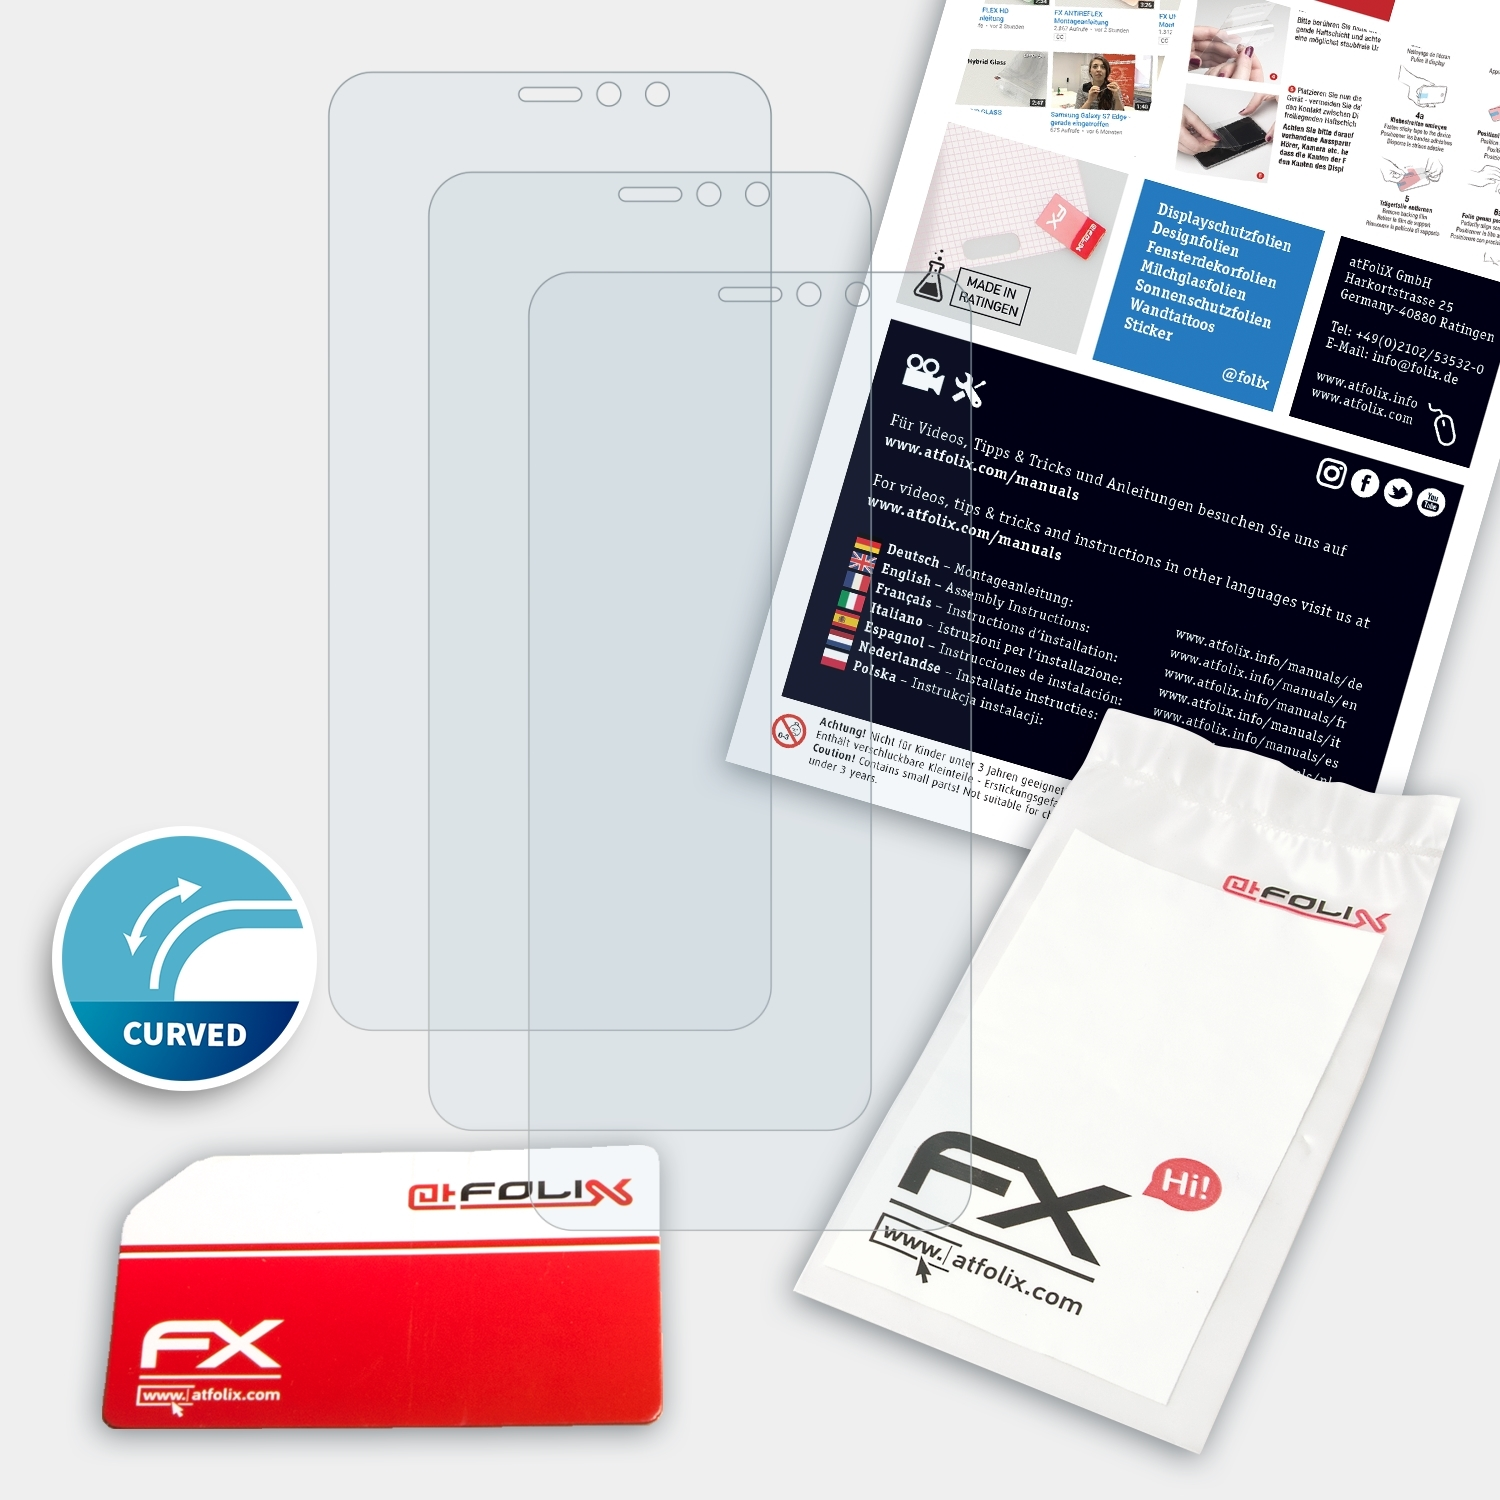 ATFOLIX 3x FX-ActiFleX Displayschutz(für EYEs) U11 HTC